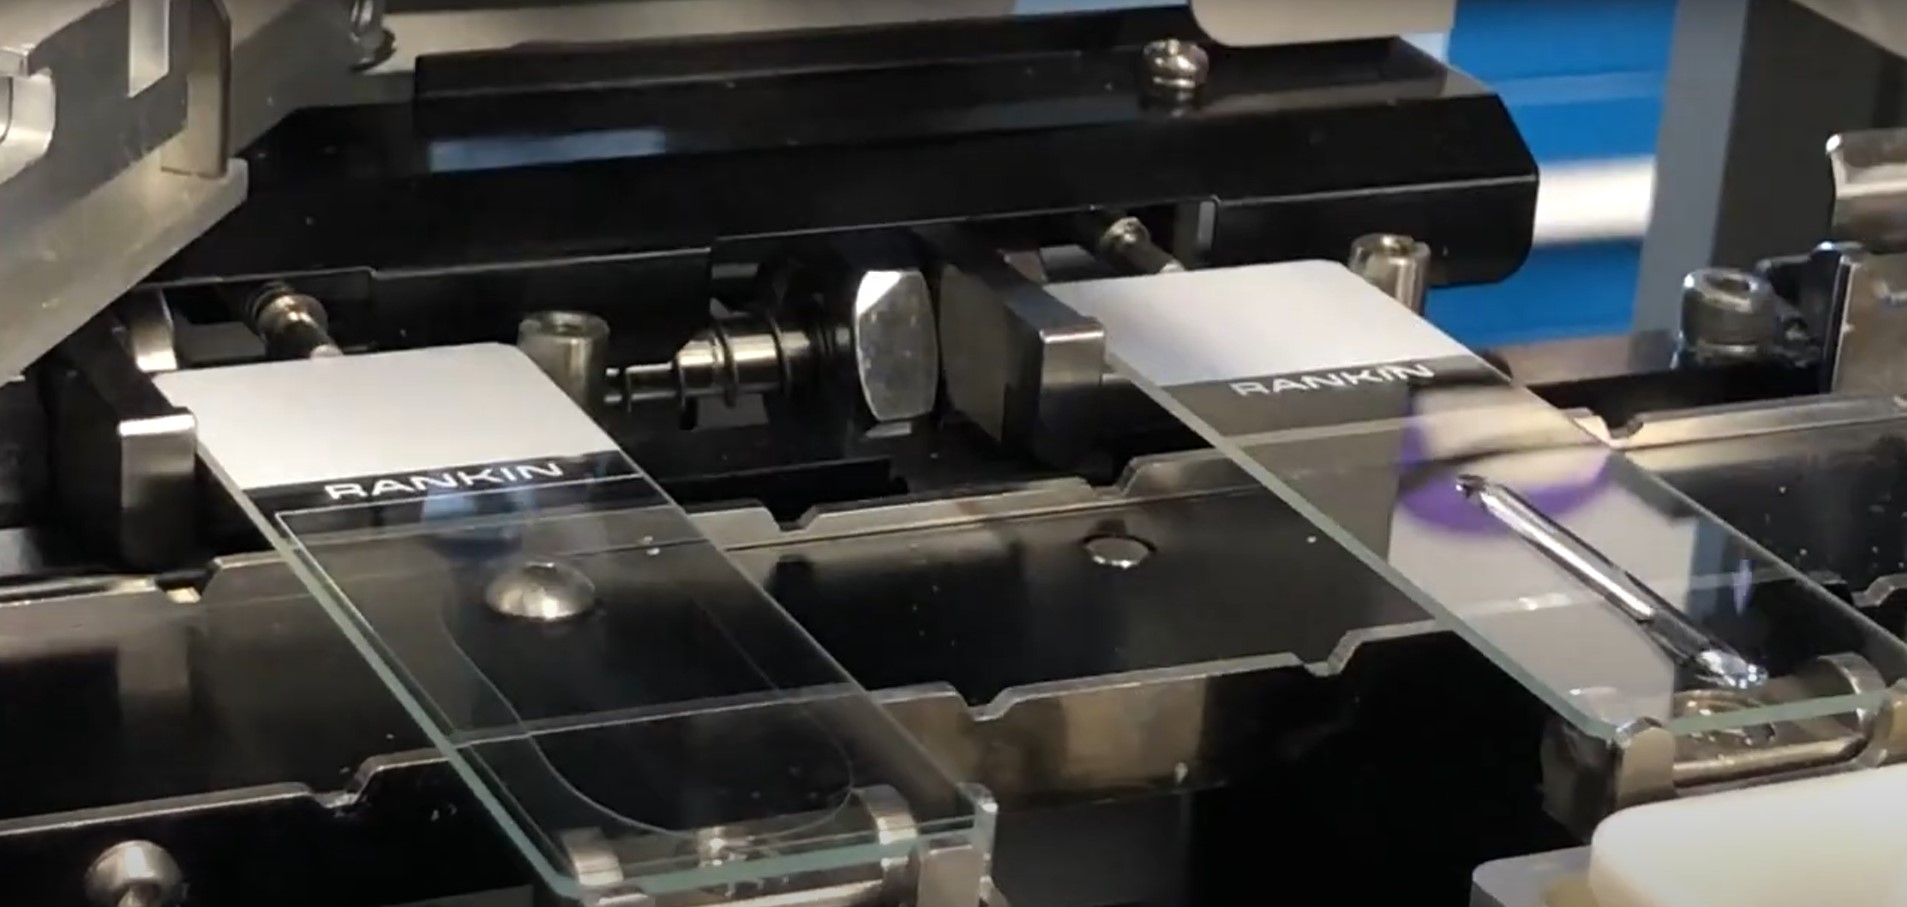 Sakura g2 6500 glass coverslipper rankin basics microscope slides in action